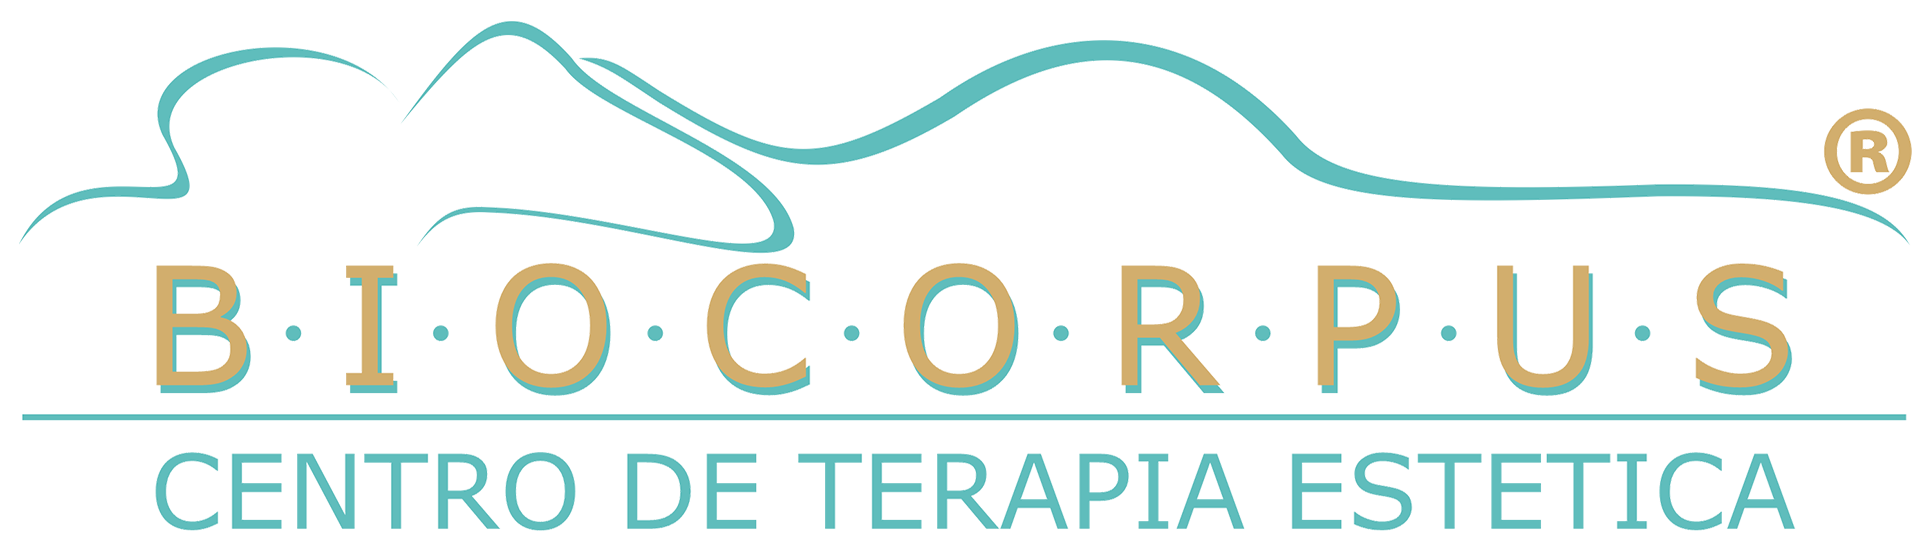 Biocorpus - Centro de Terapia Estética